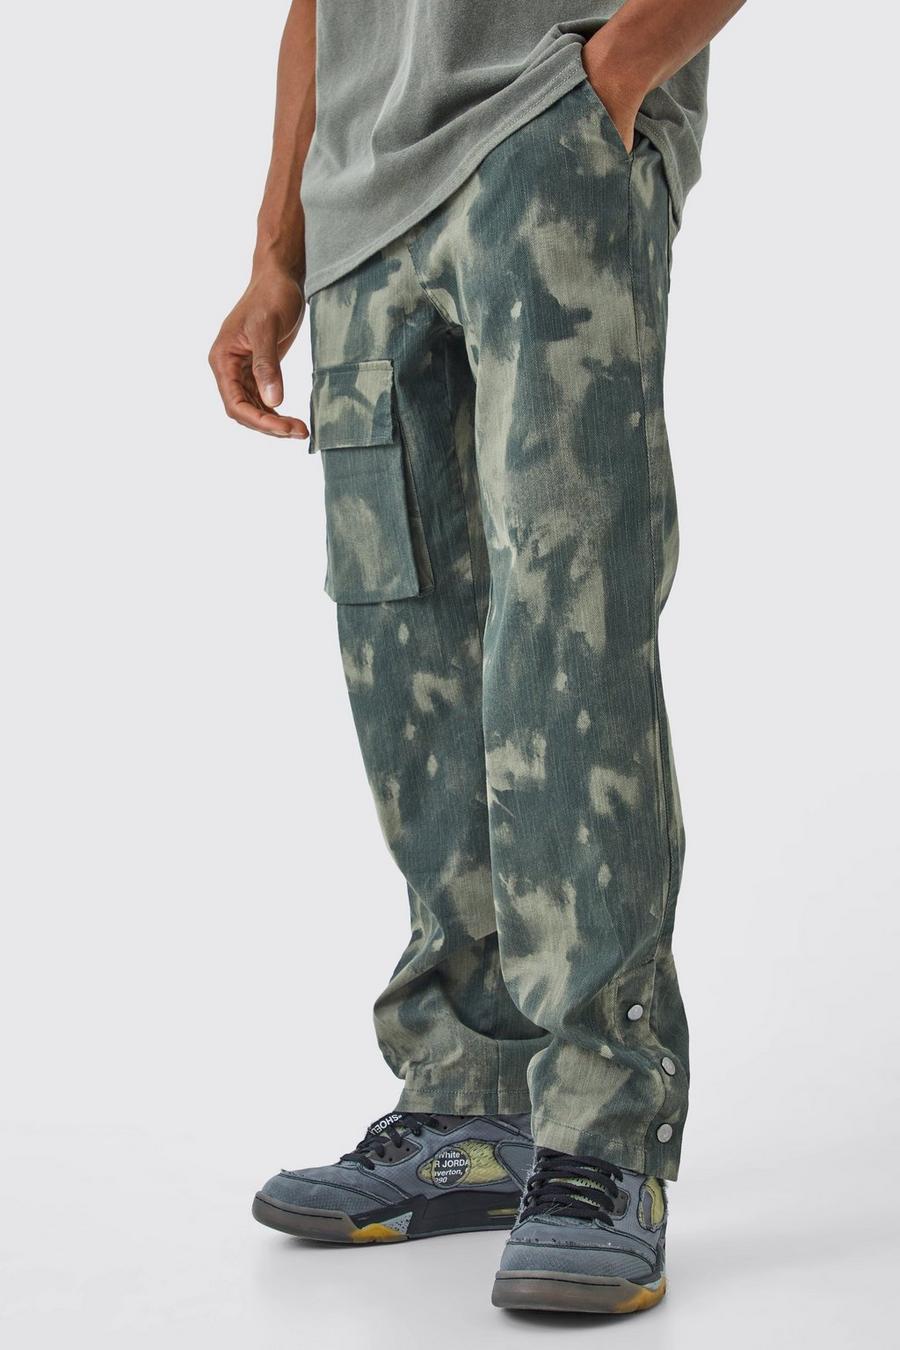 Pantaloni Cargo Slim Fit in fantasia militare con bottoni a pressione sul fondo, Khaki